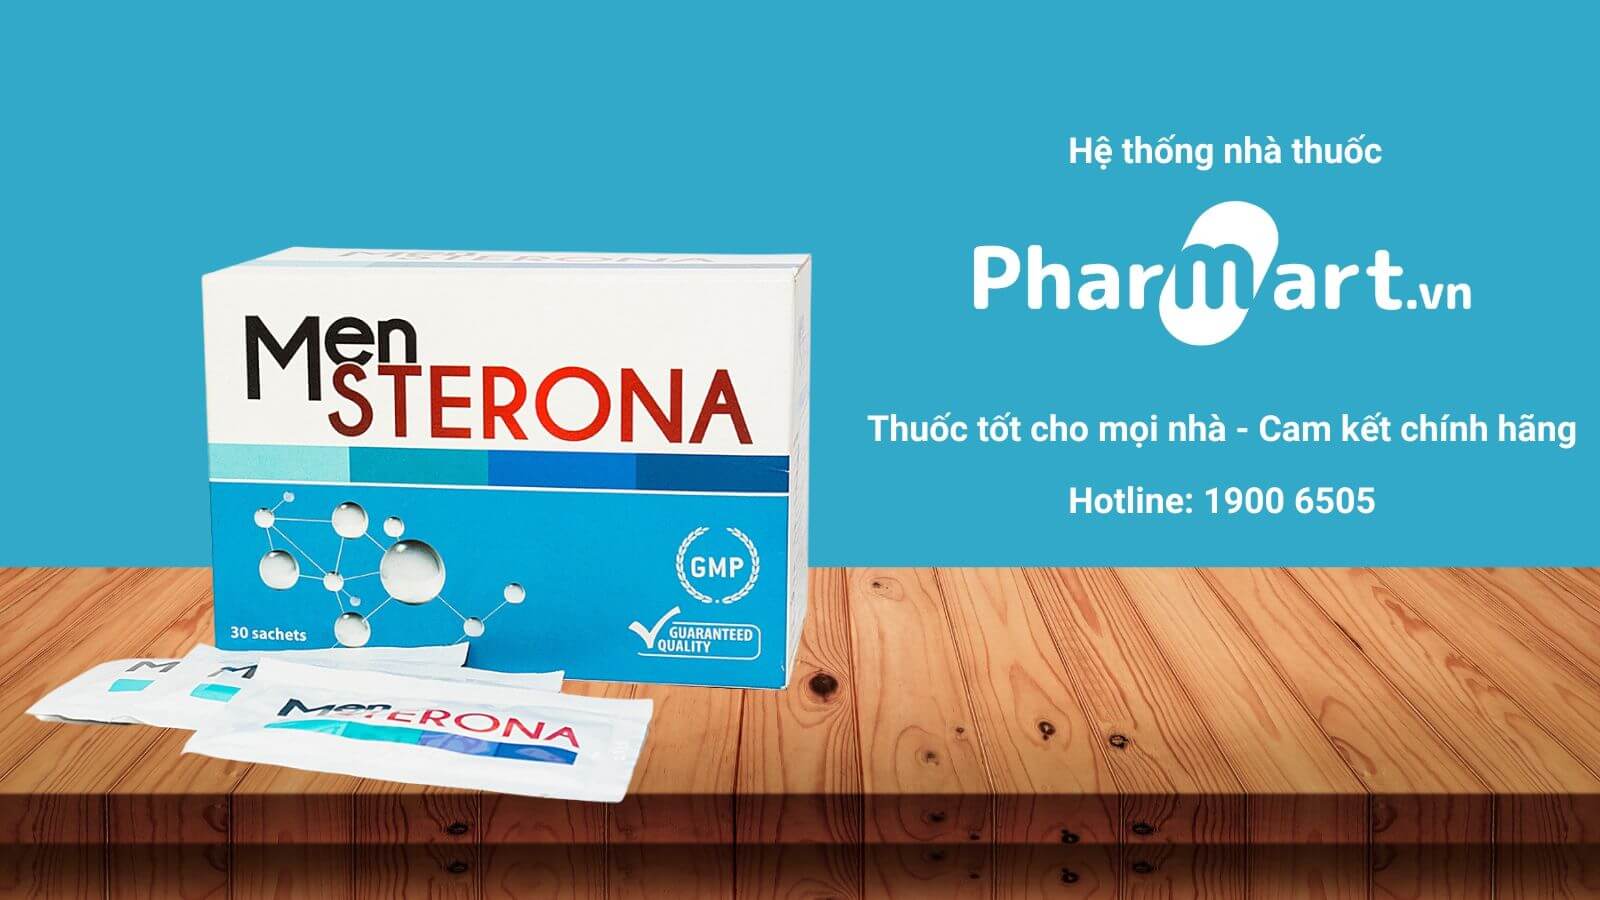 Mua Mensterona chính hãng tại Pharmart.vn